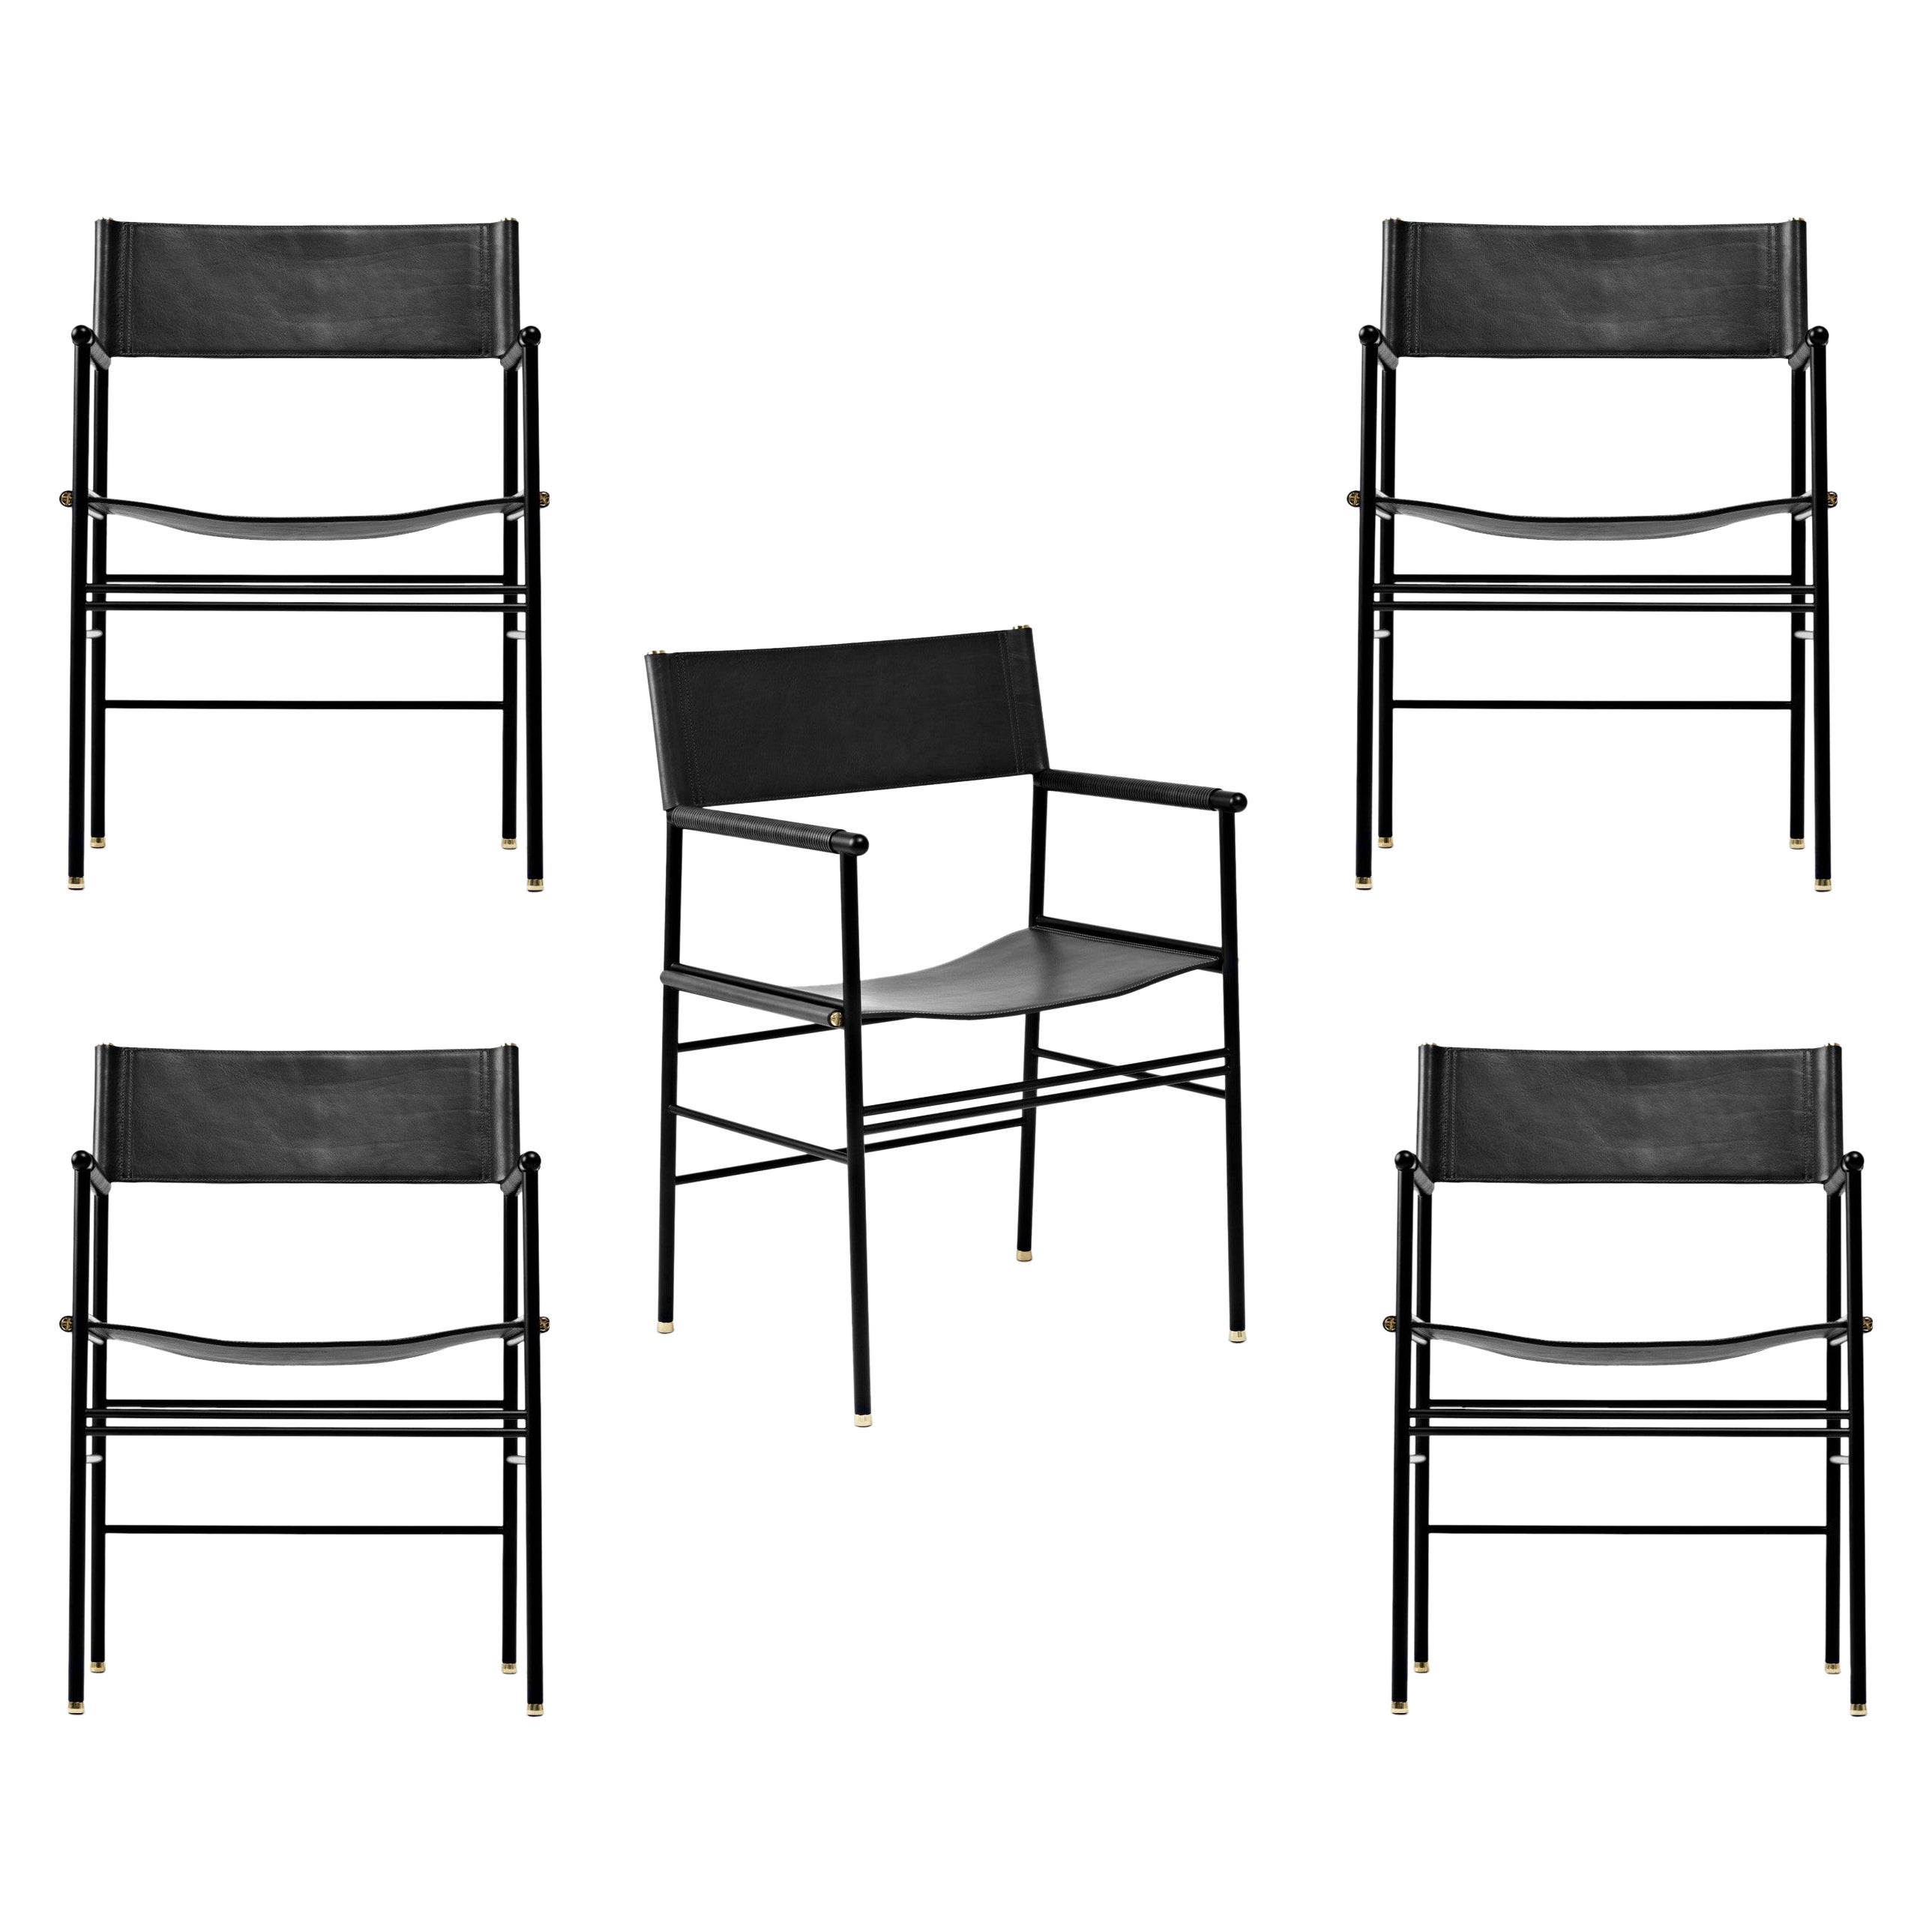 Ensemble de 5 chaises artisanales contemporaines en cuir noir et métal en caoutchouc noir